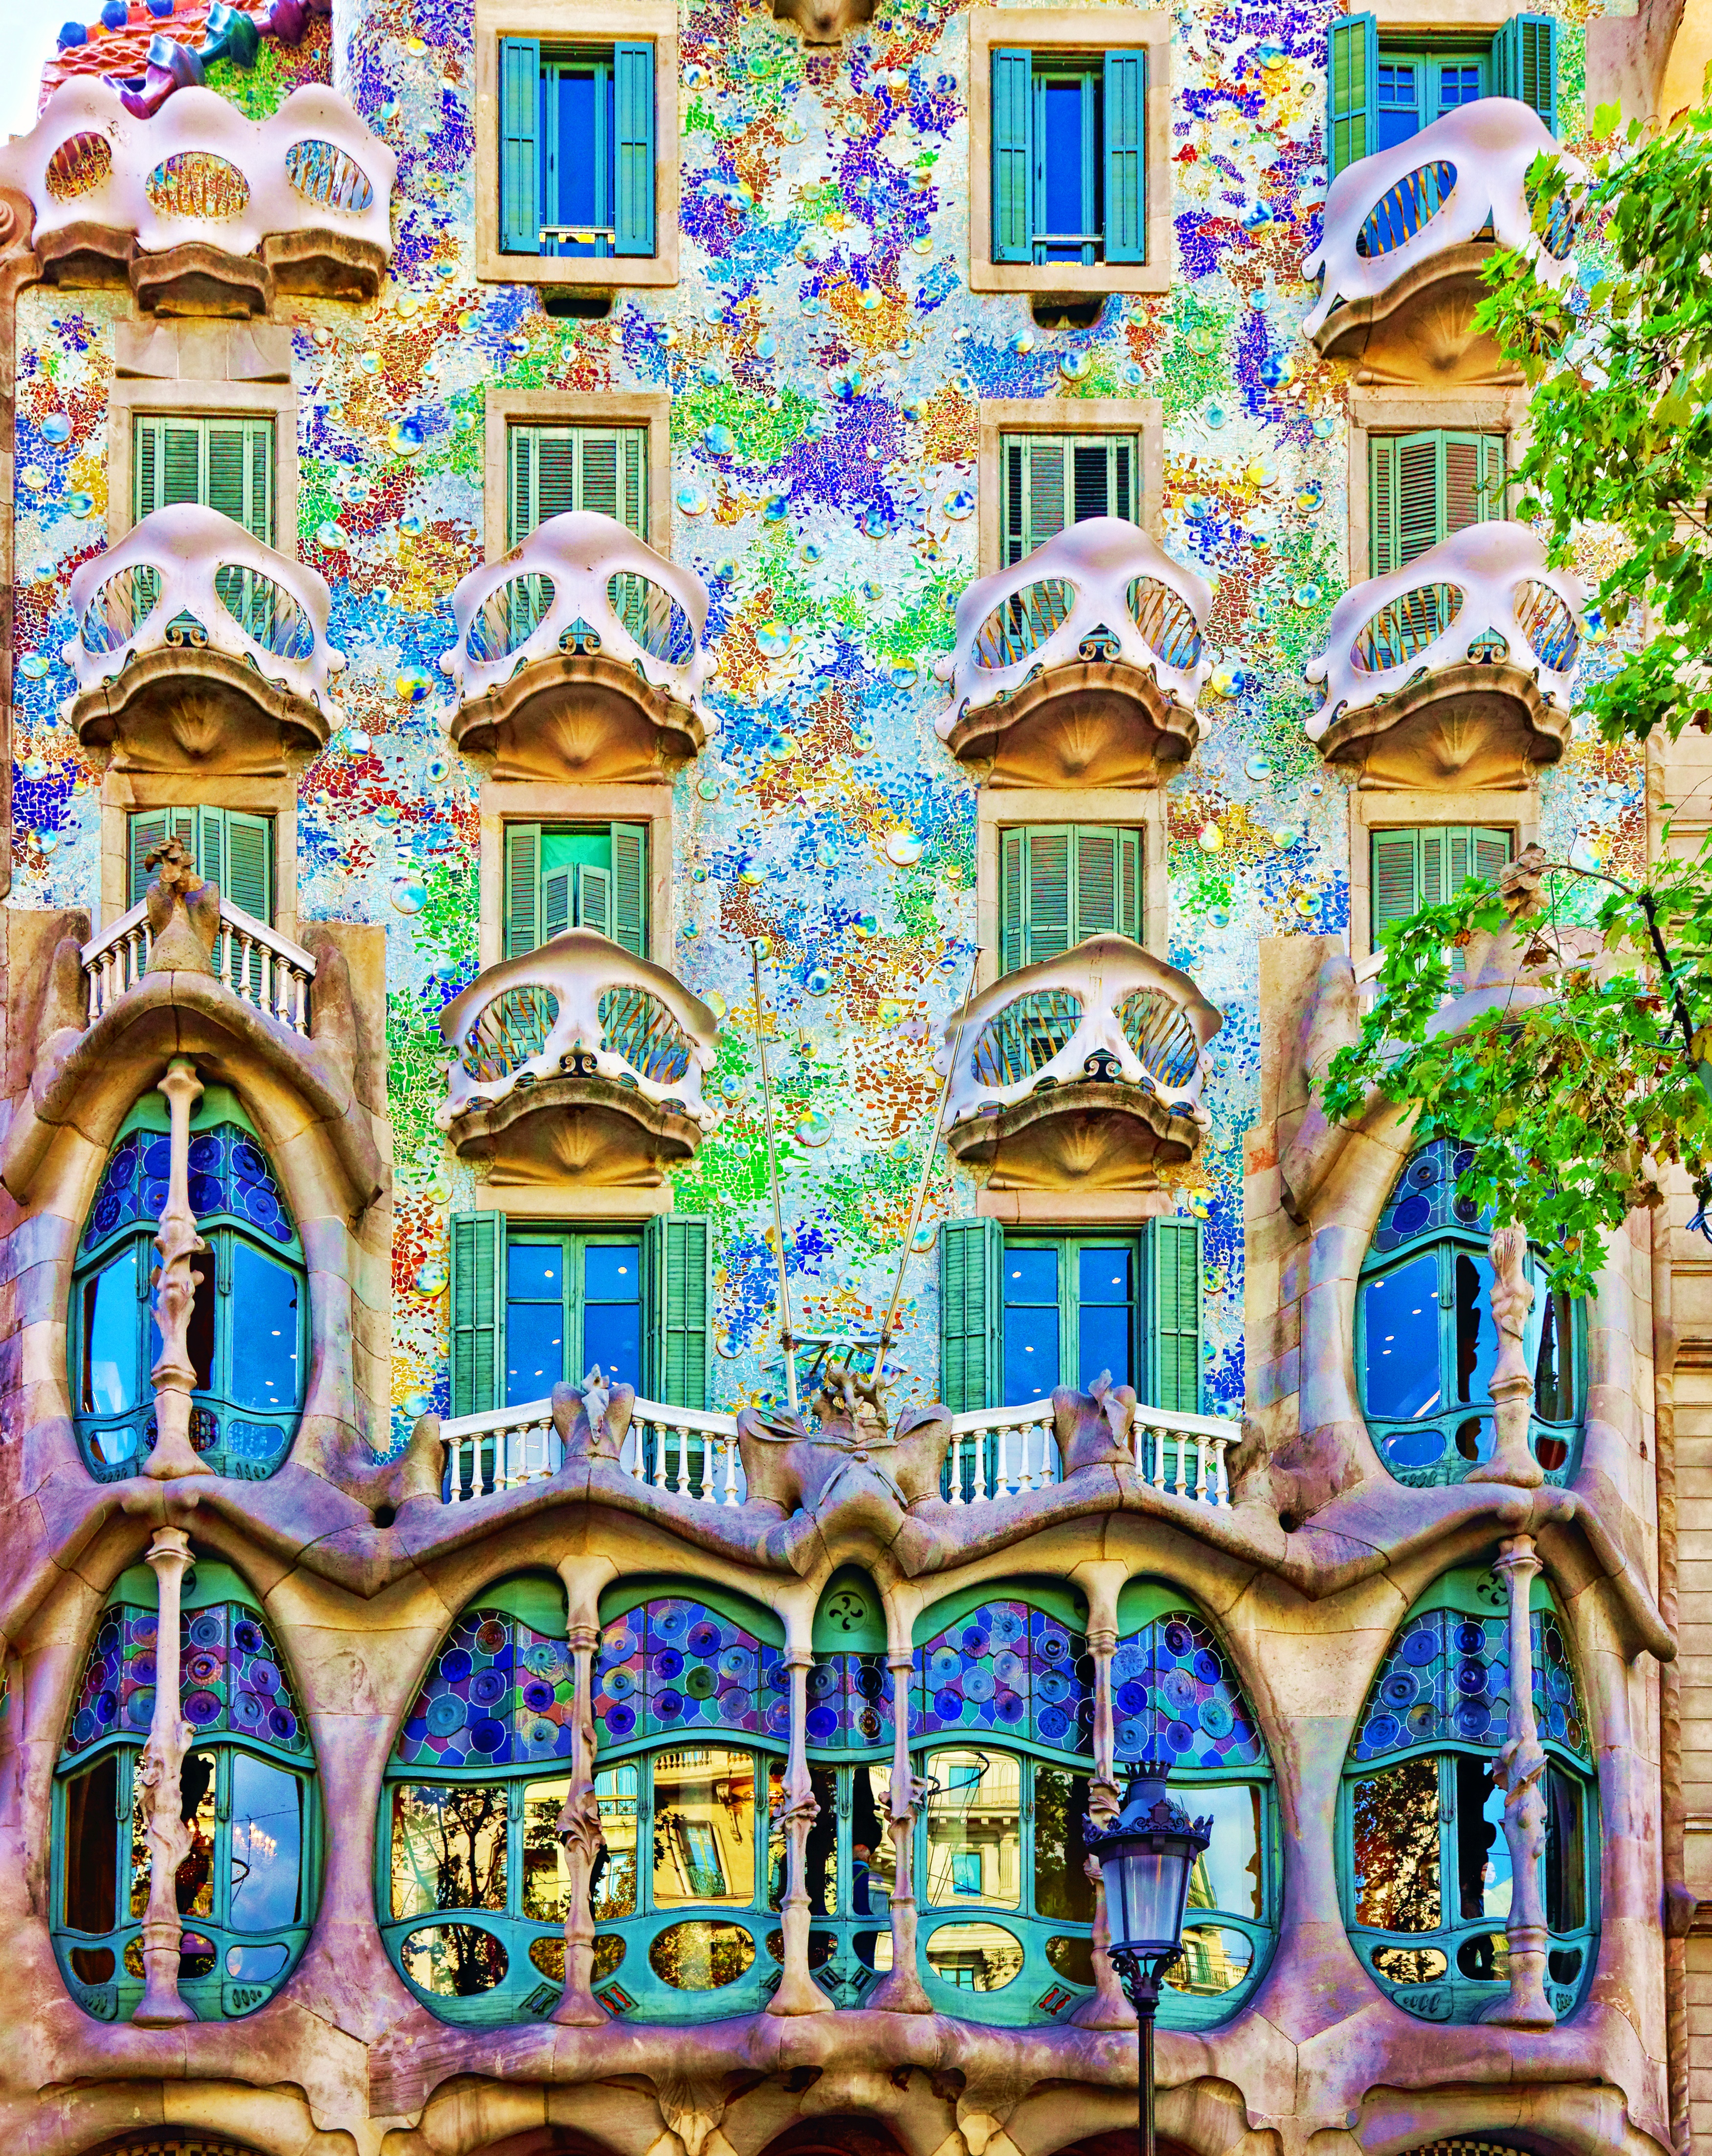 【世界遺産】バルセロナで絶対見るべきガウディ建築6つ徹底解説【パート3】